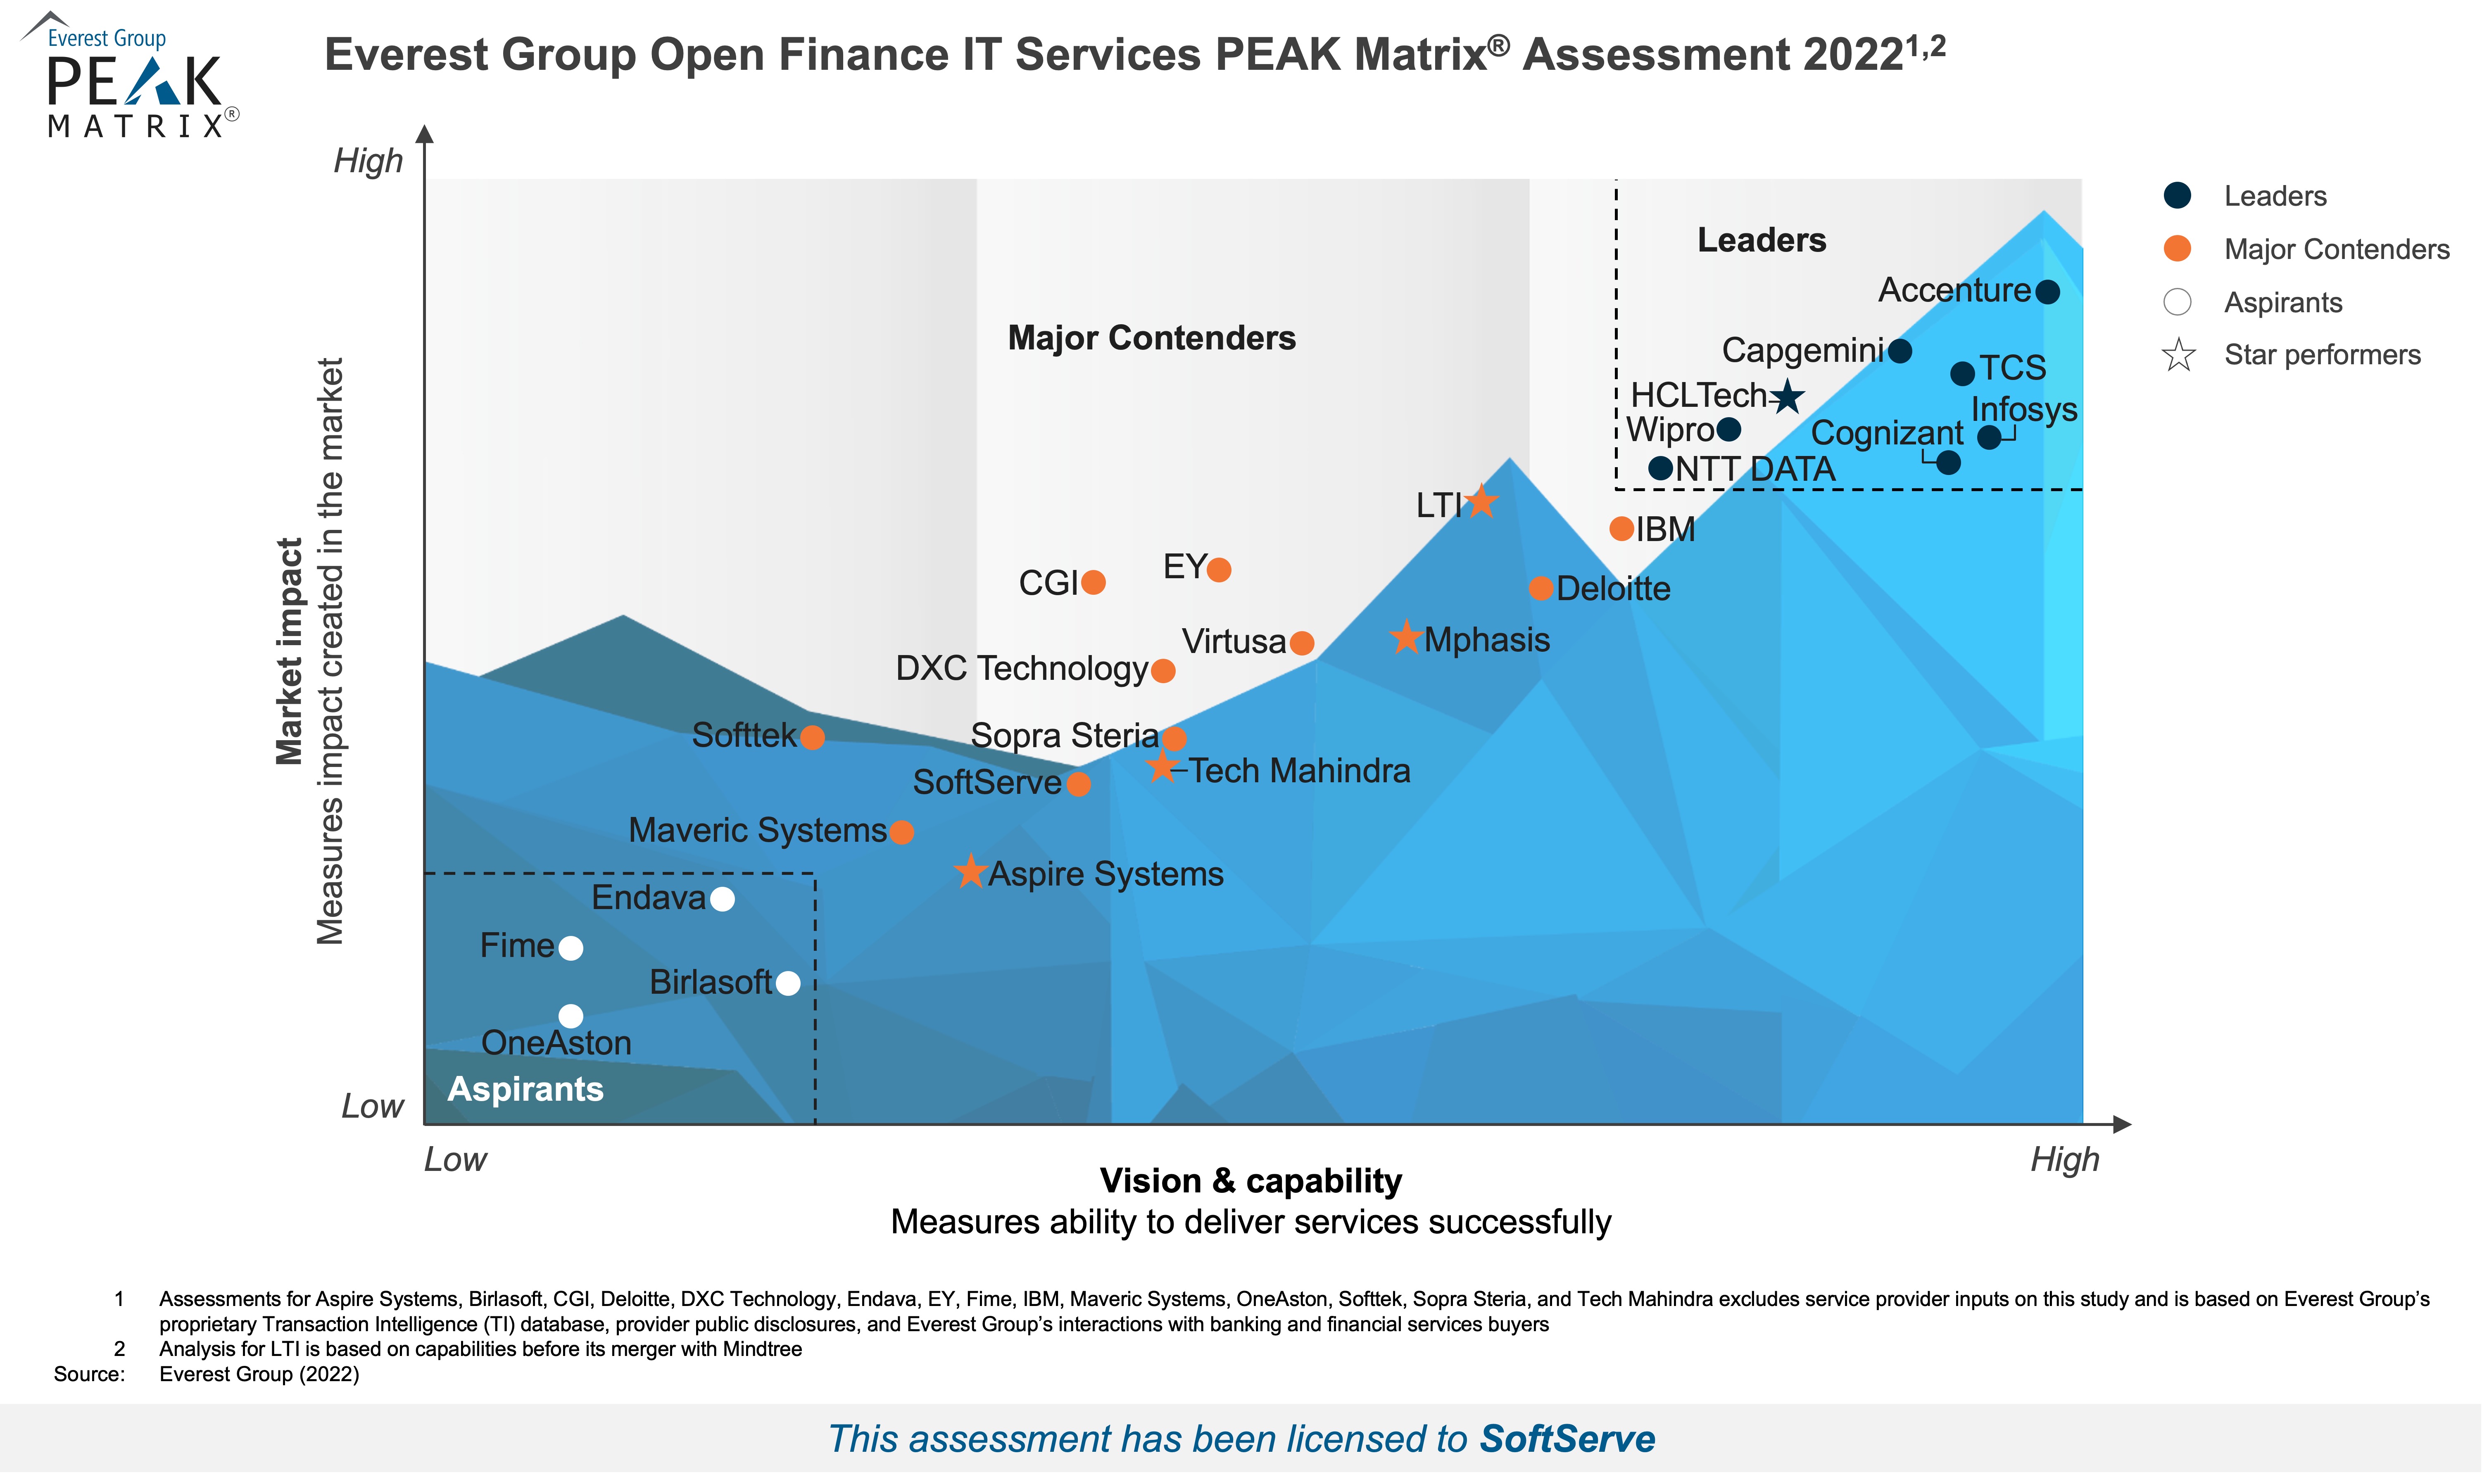 PEAK Matrix Open Finance IT